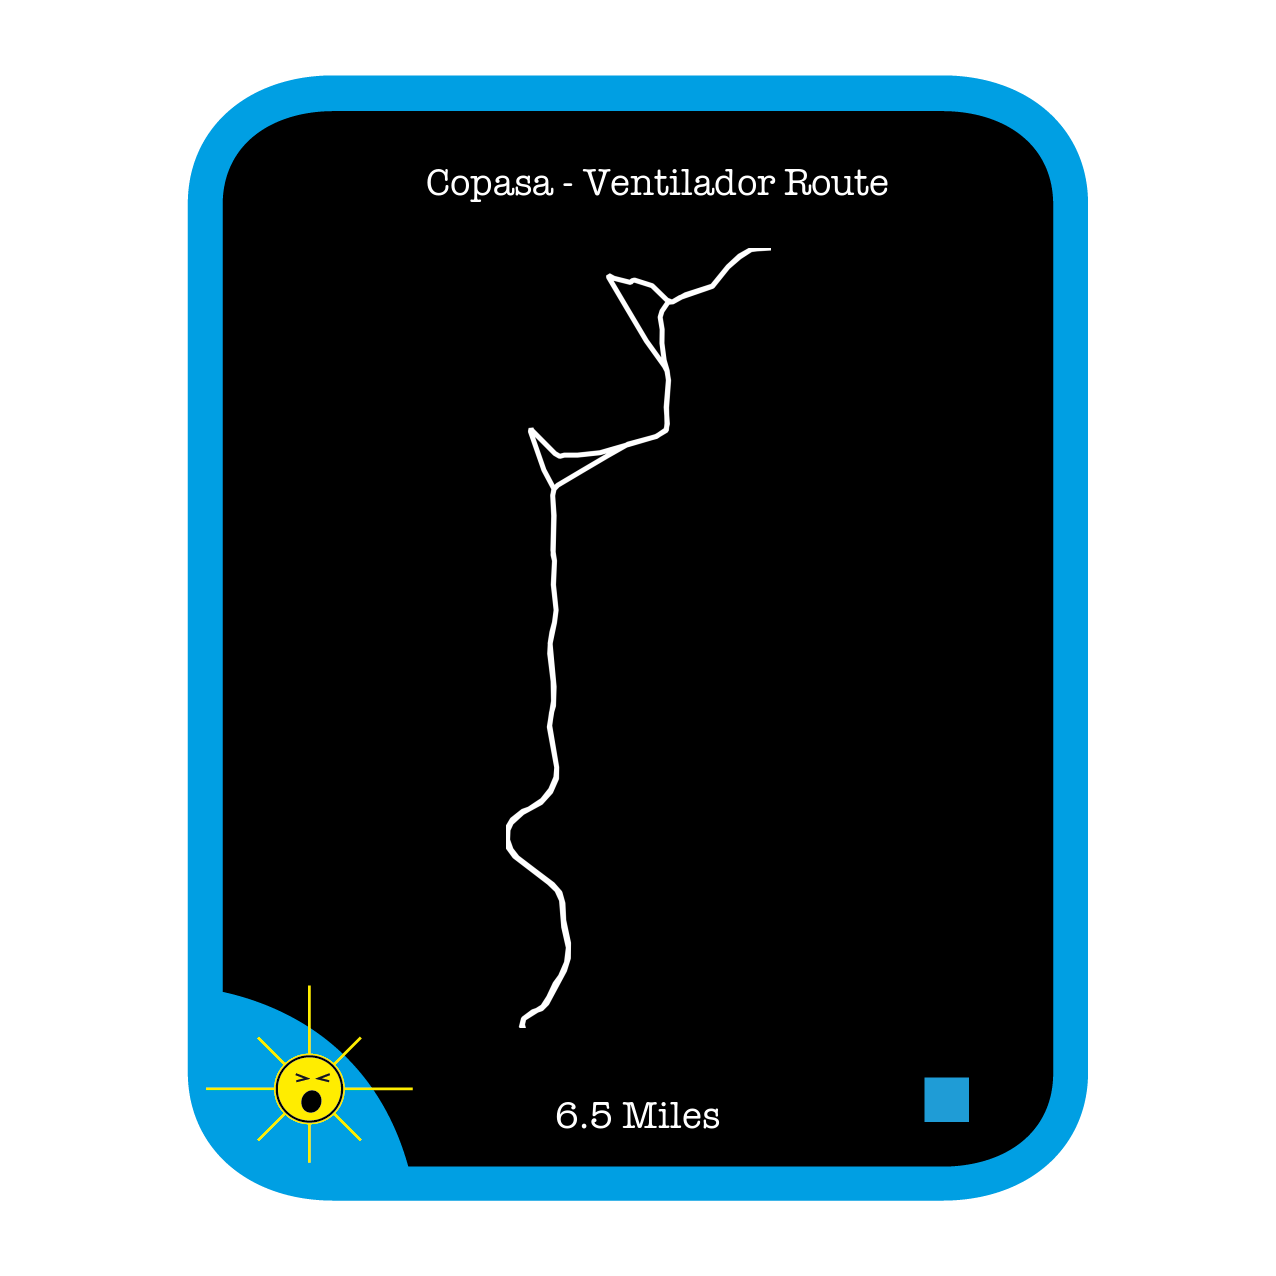 Copasa - Ventilador Route